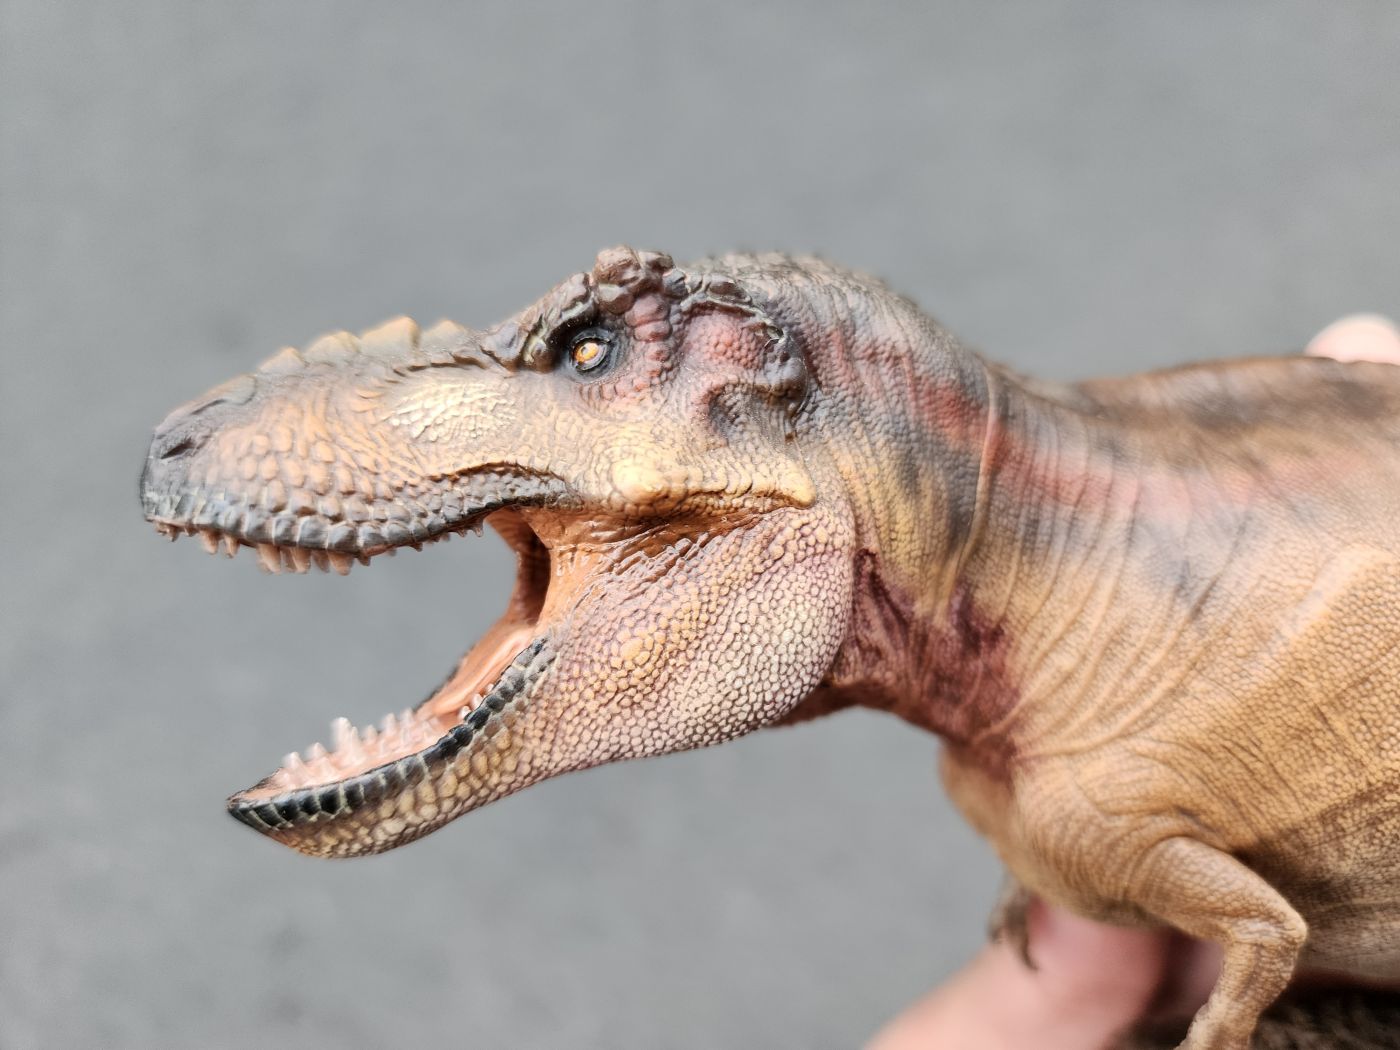 Mô hình khủng long T-Rex W-Dragon Tyrannosaurus Rex tỉ lệ 1/35